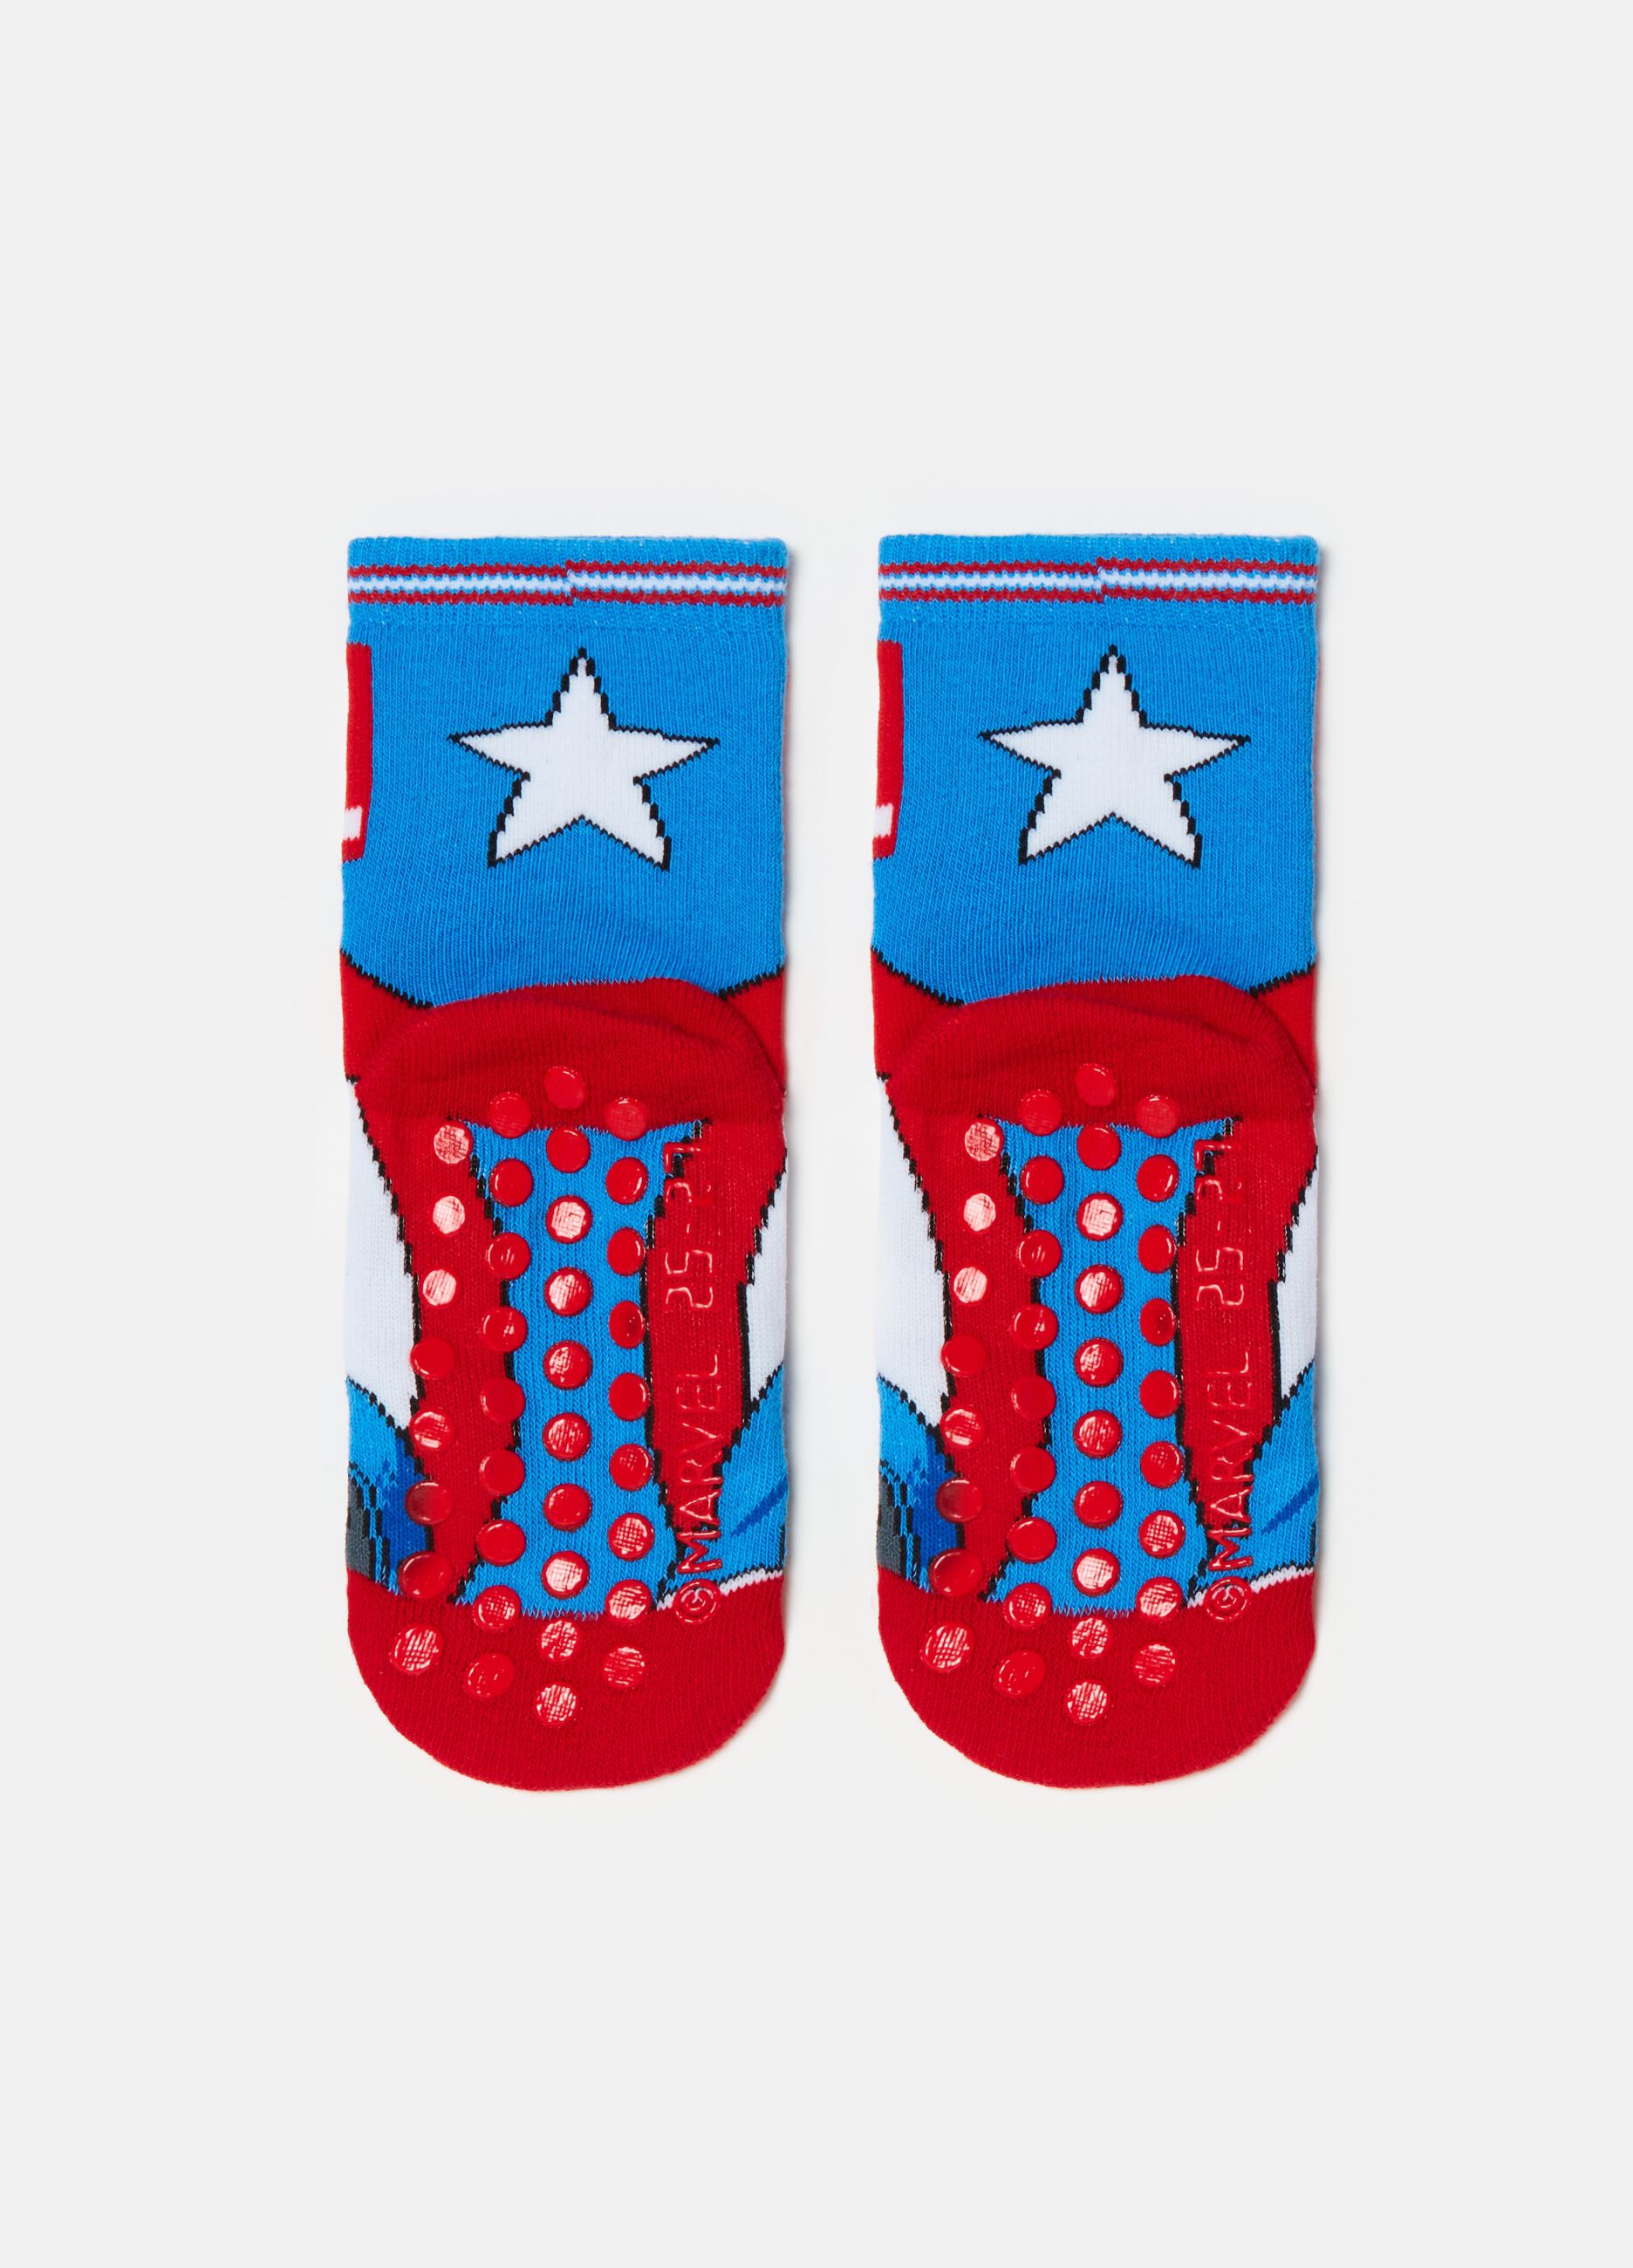 Slipper socks with Captain America design